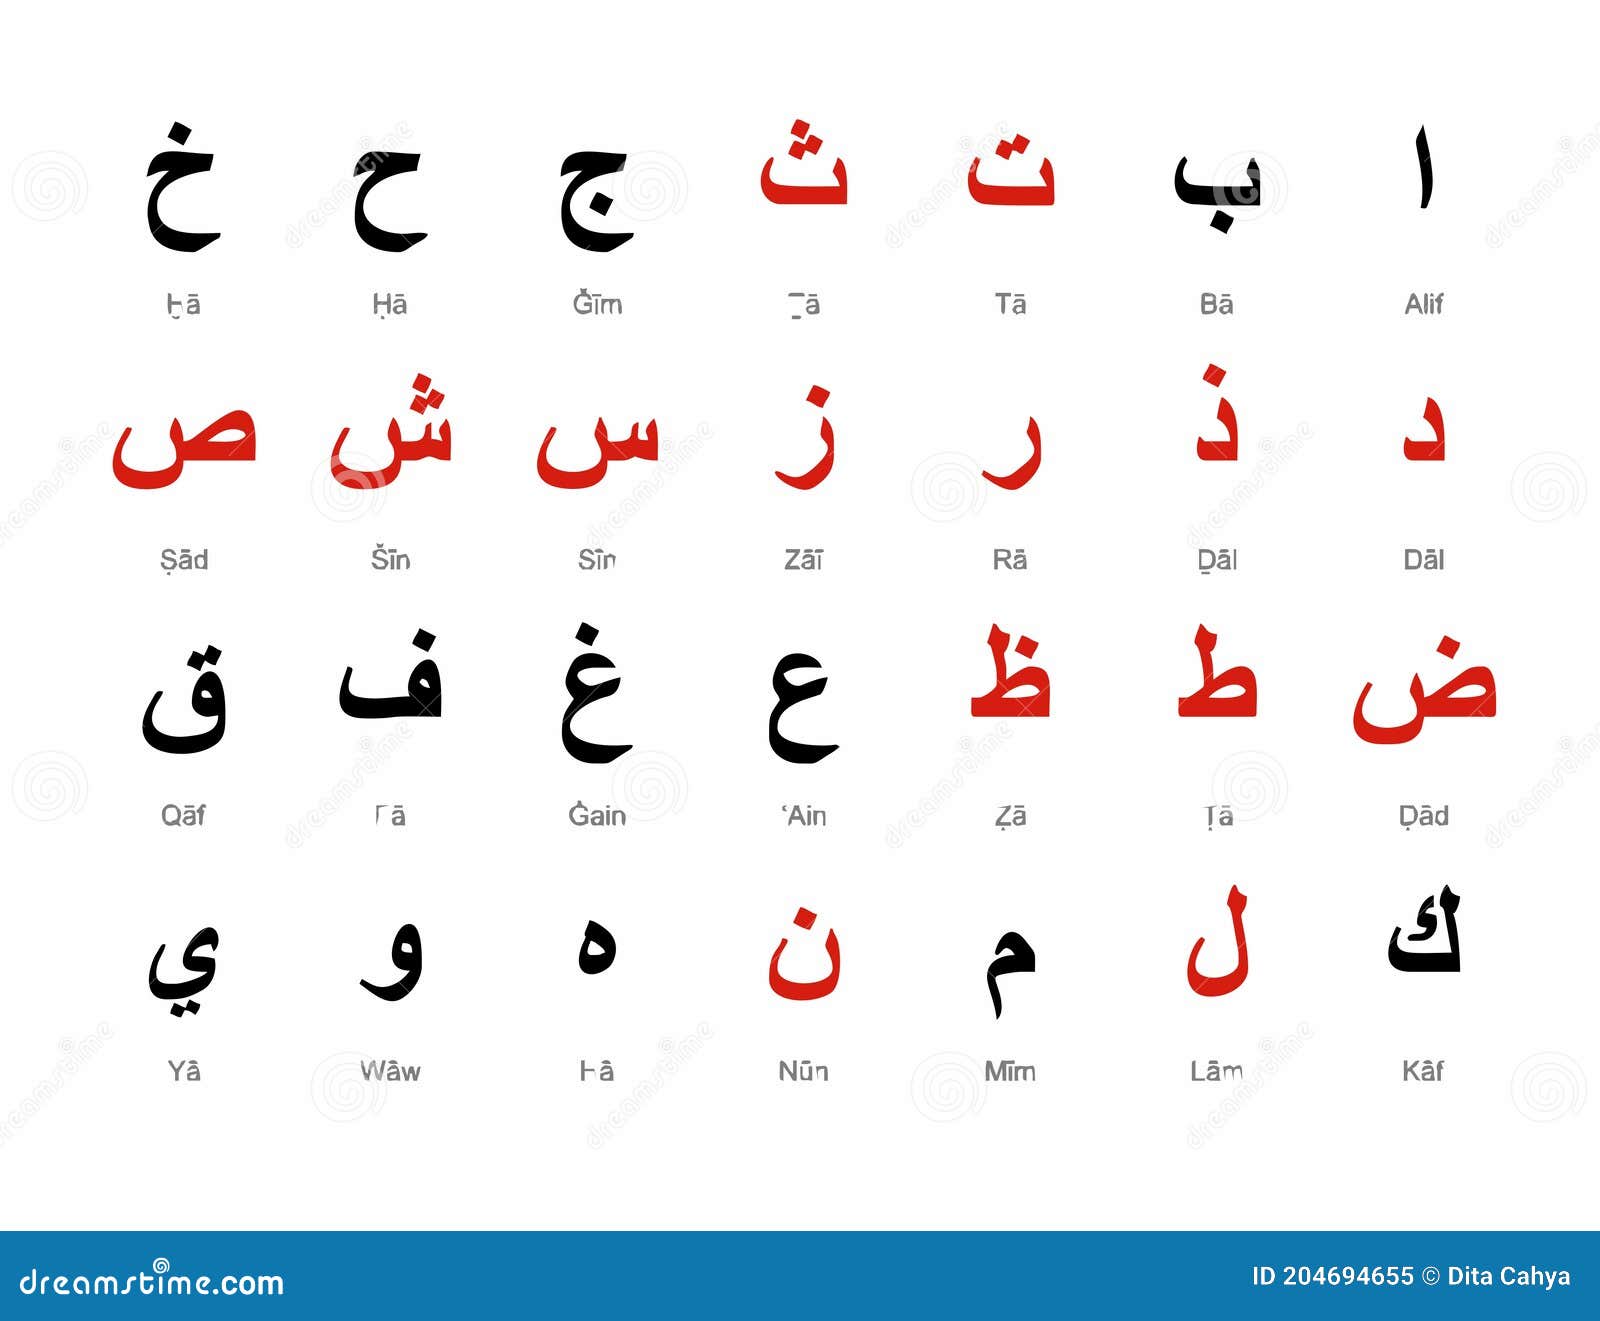 Arabisch Moeslim Islamisches Schreiben Alif Ba Ta Vektor Abbildung